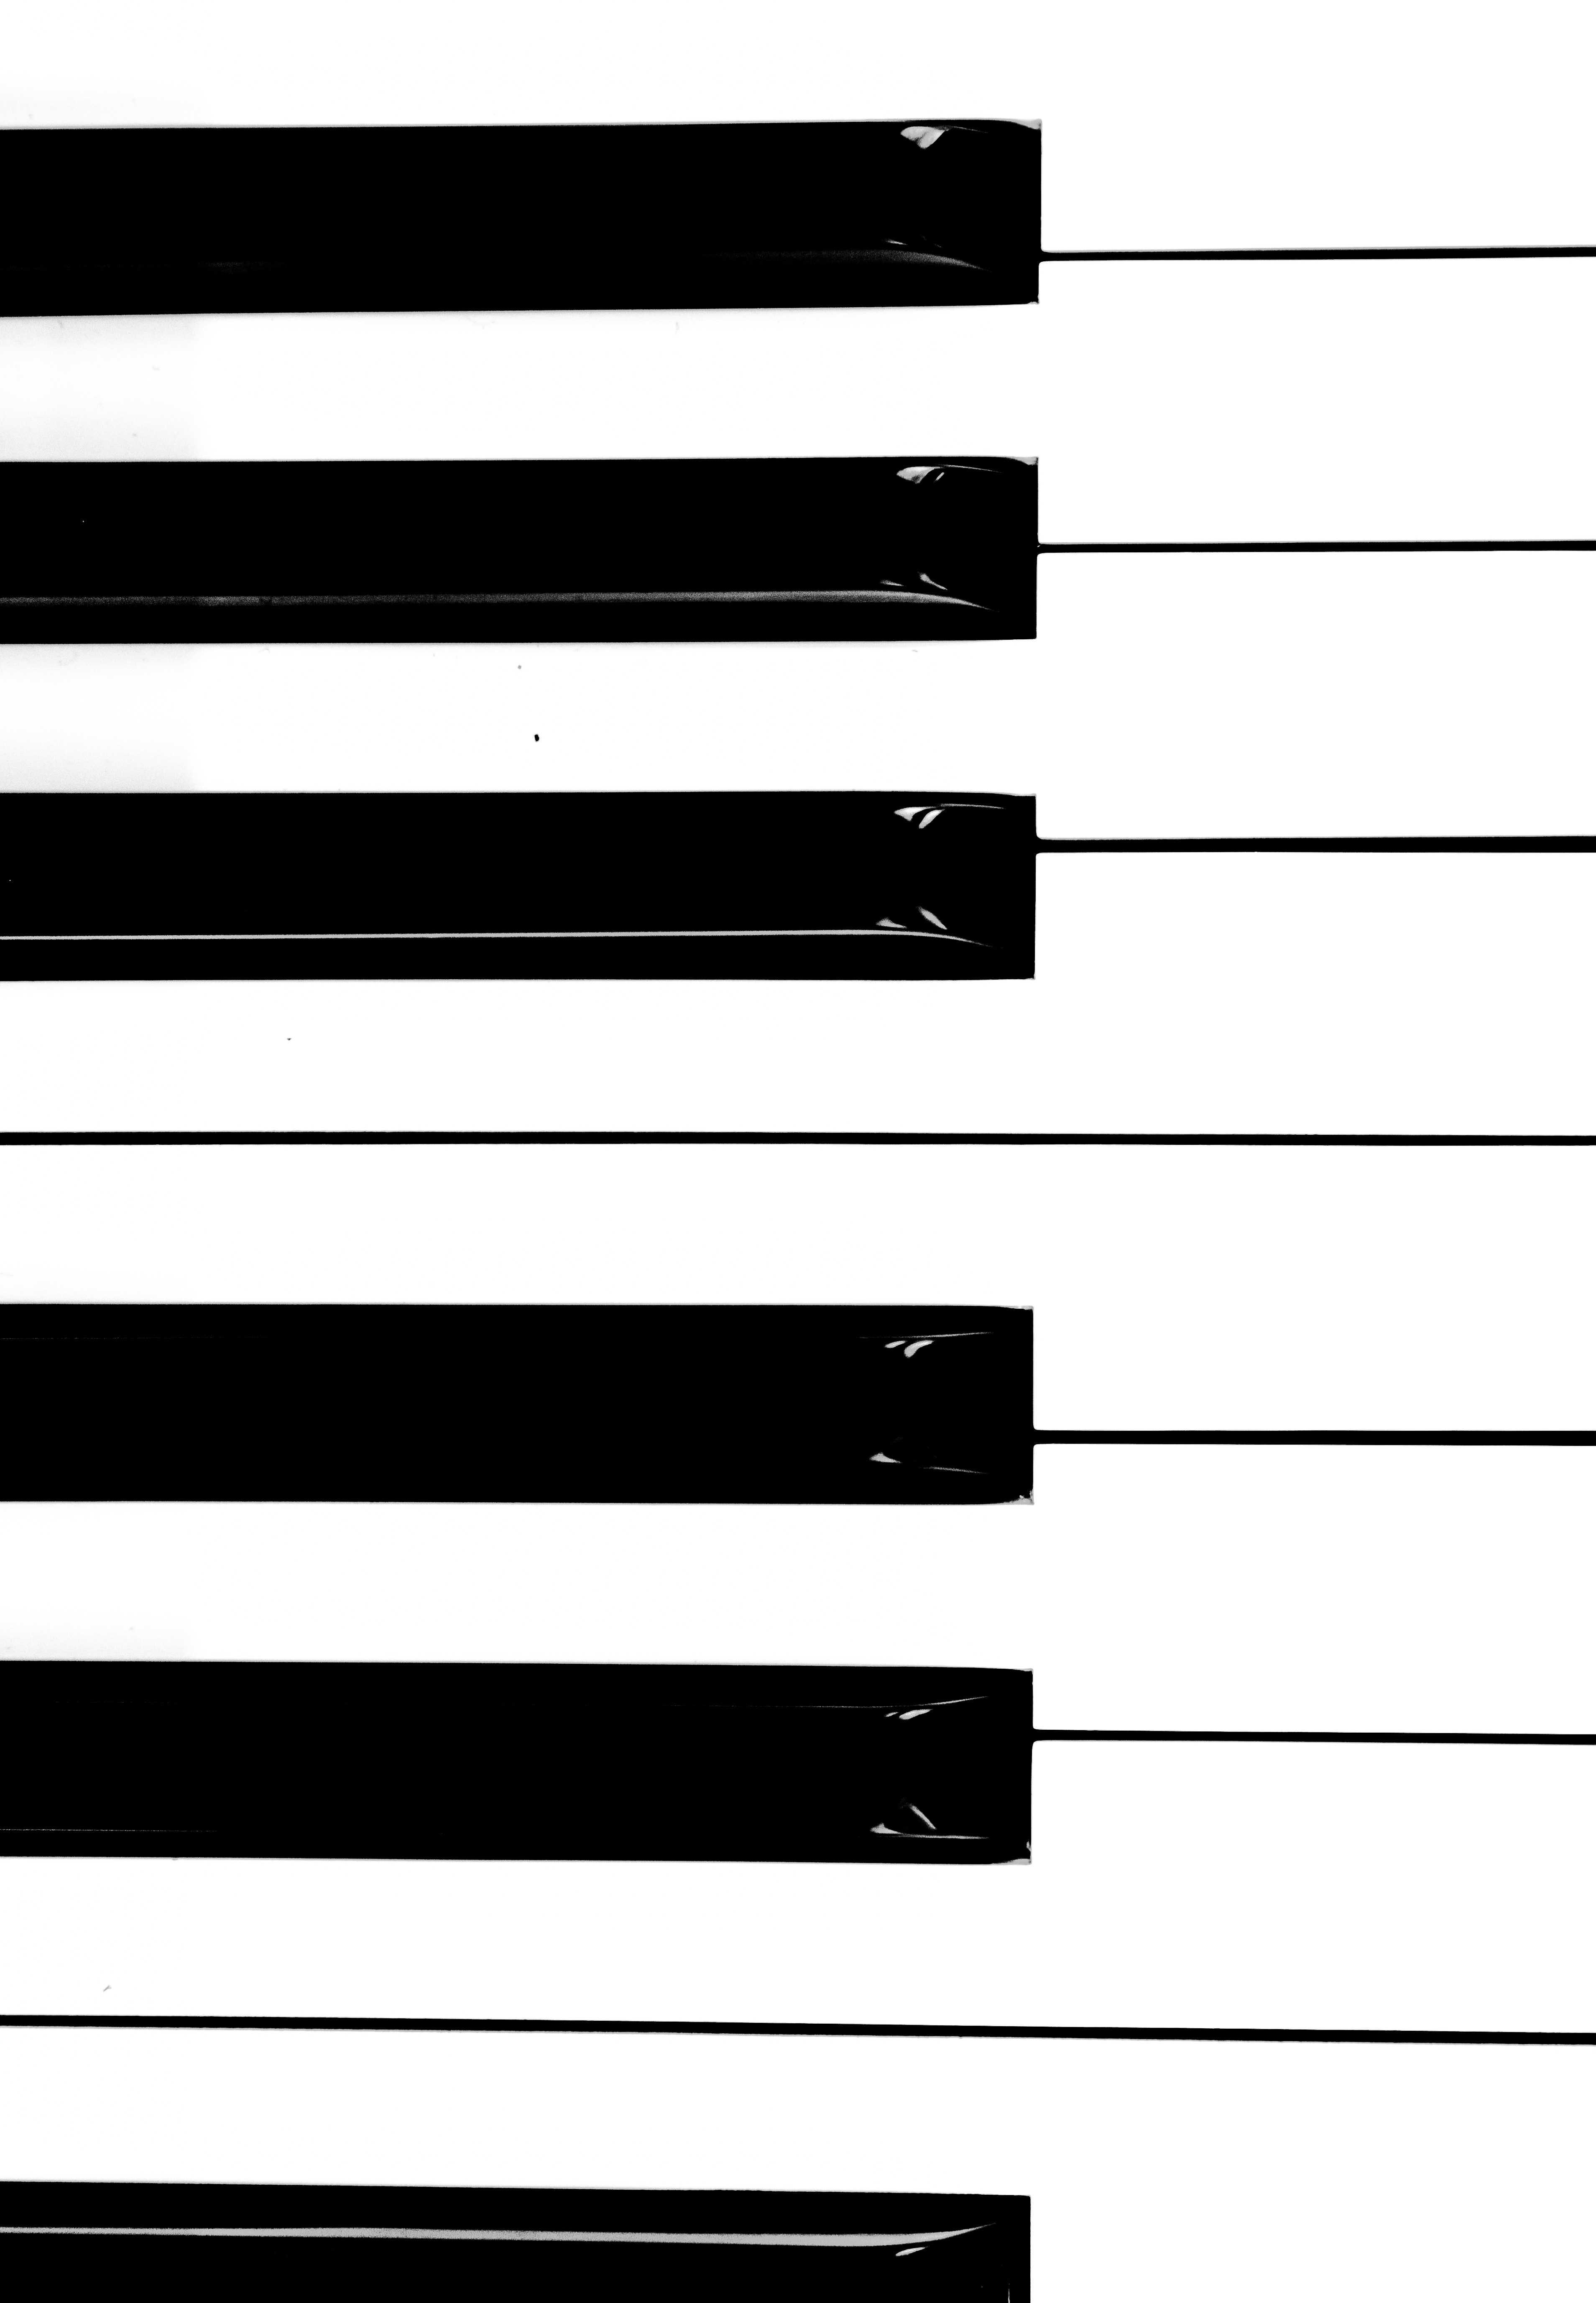 piano, music, minimalism, musical instrument, bw, chb, keys